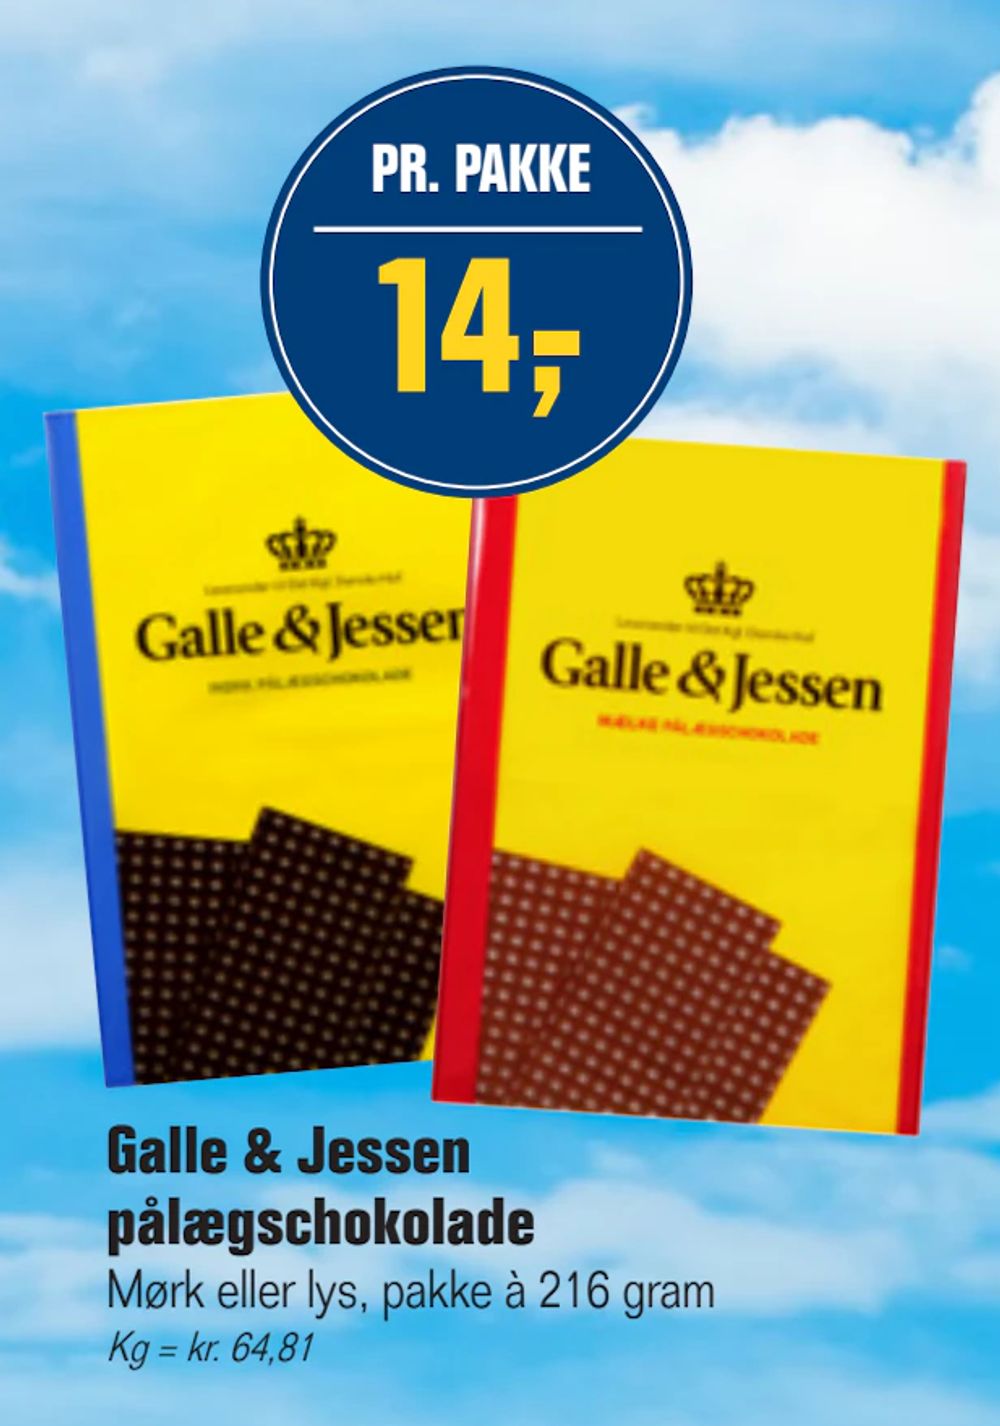 Tilbud på Galle & Jessen pålægschokolade fra Otto Duborg til 14 kr.